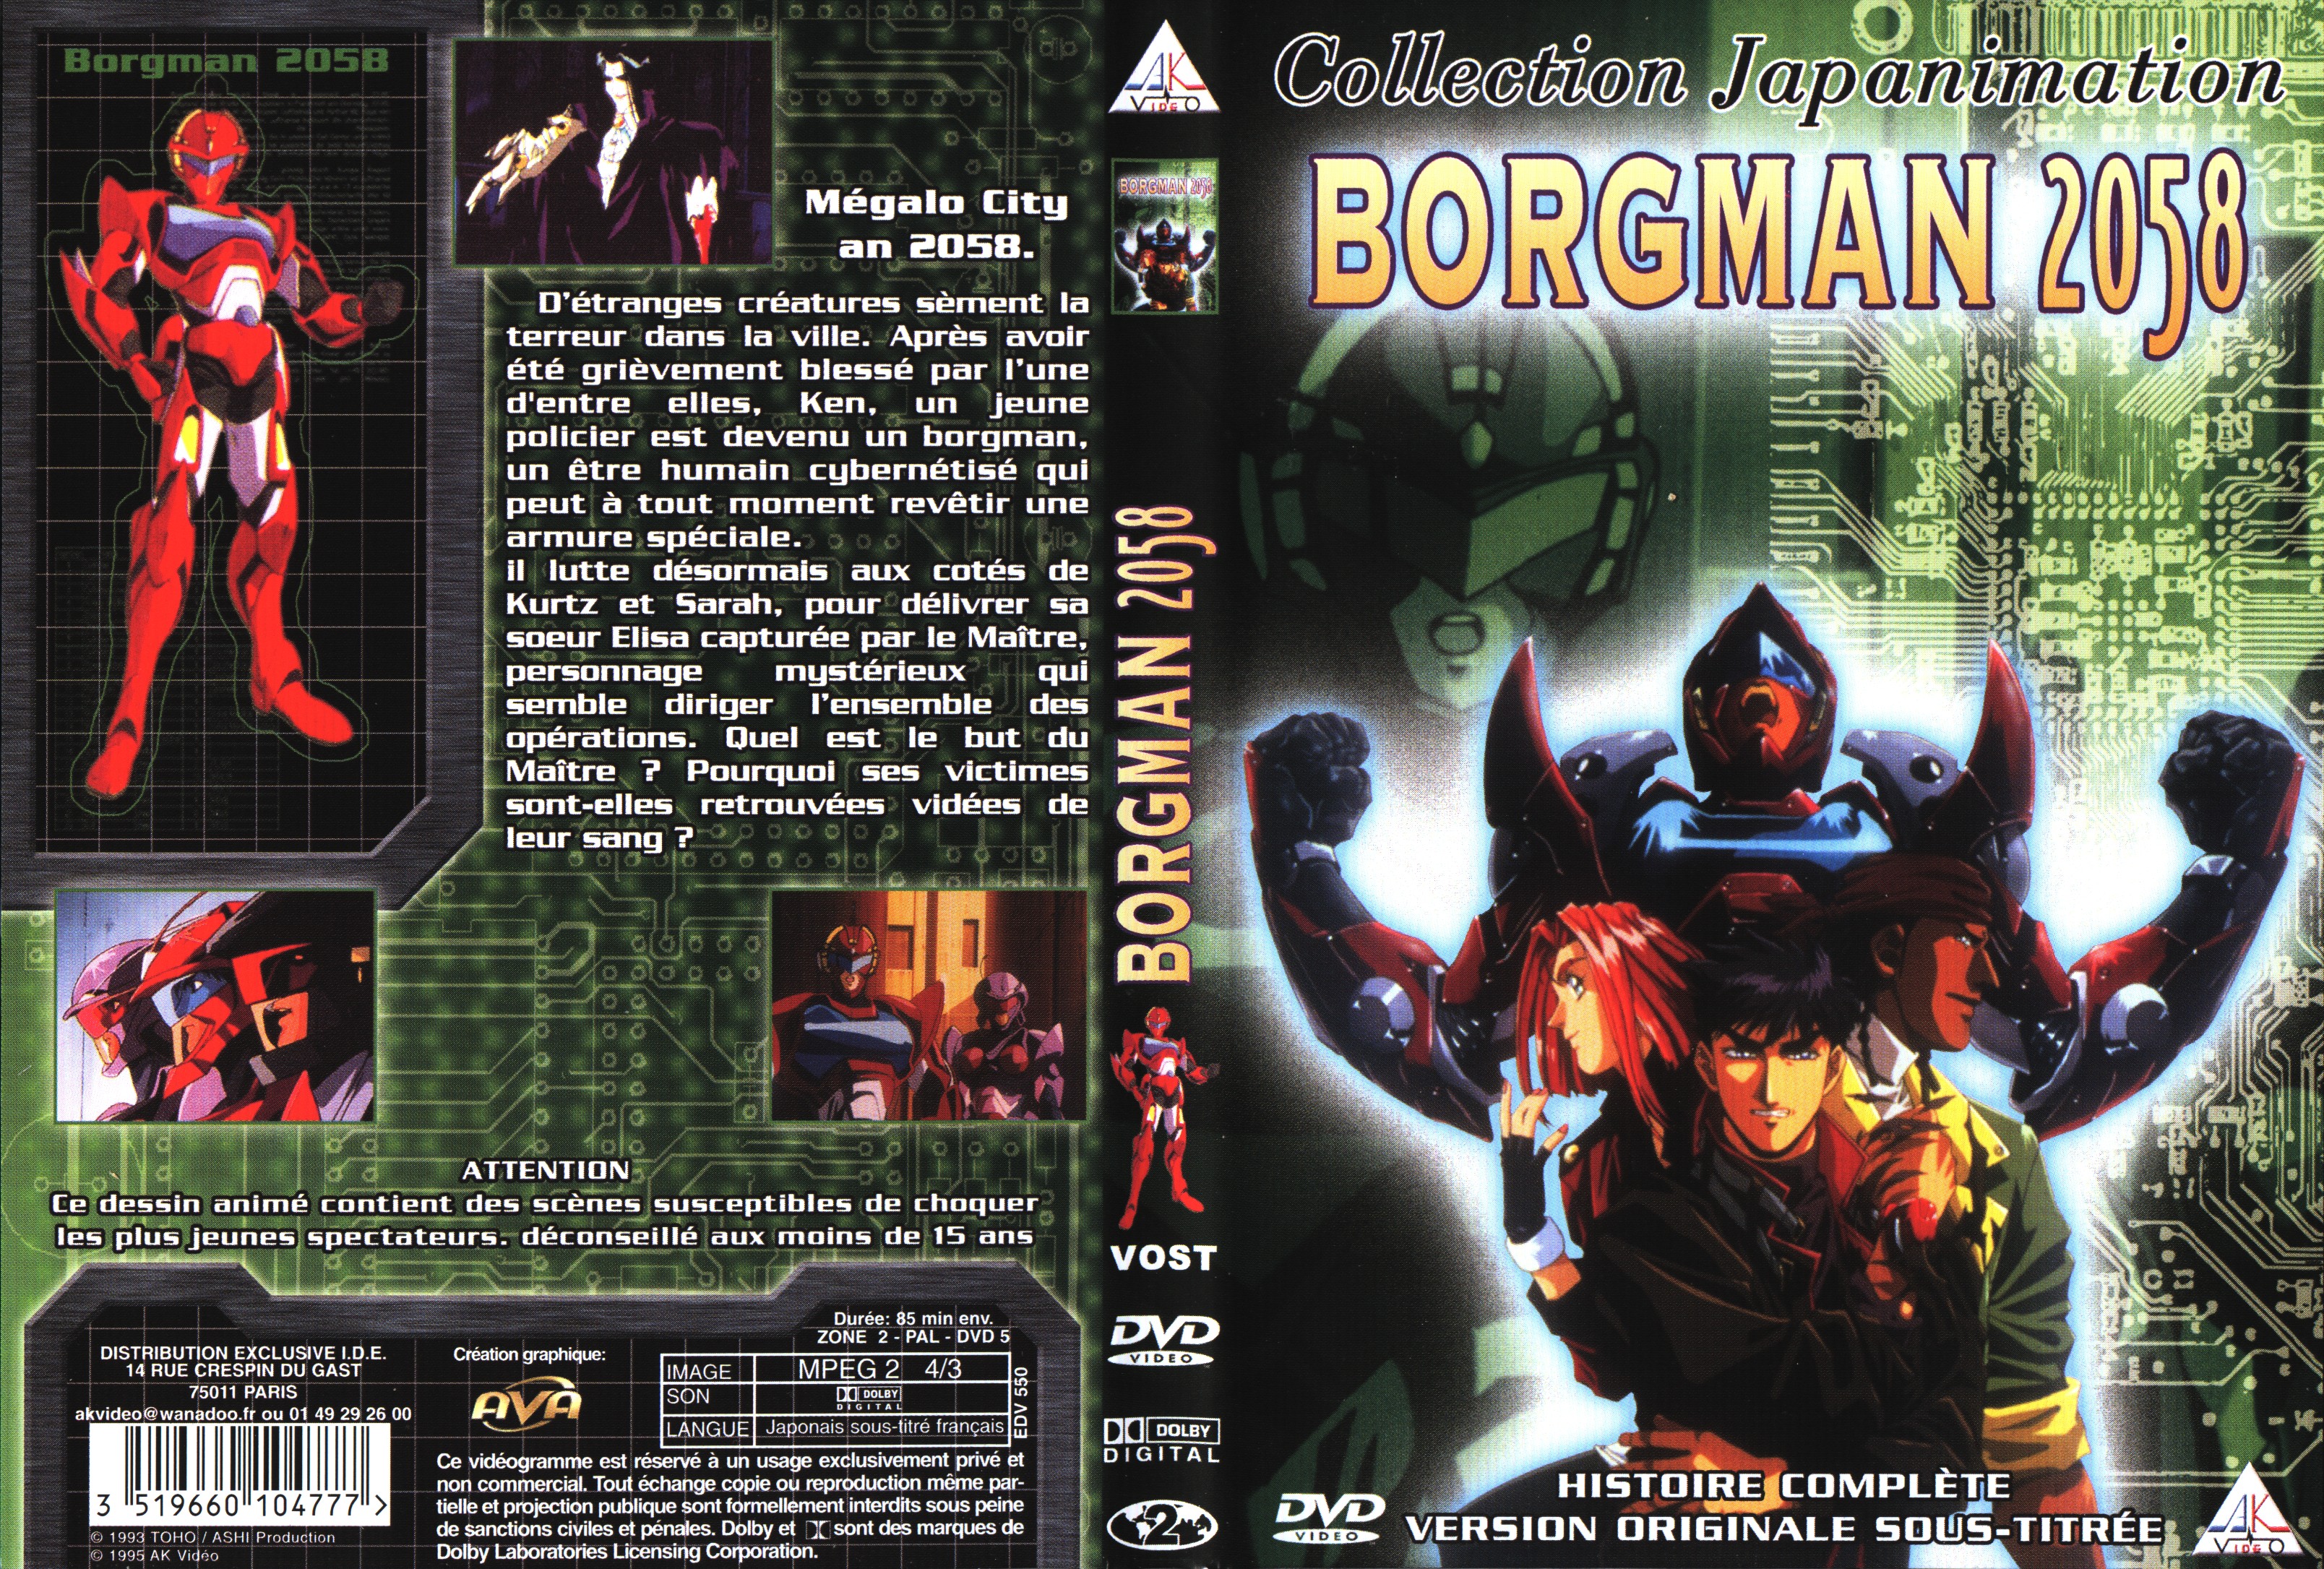 Jaquette DVD Borgman 2058